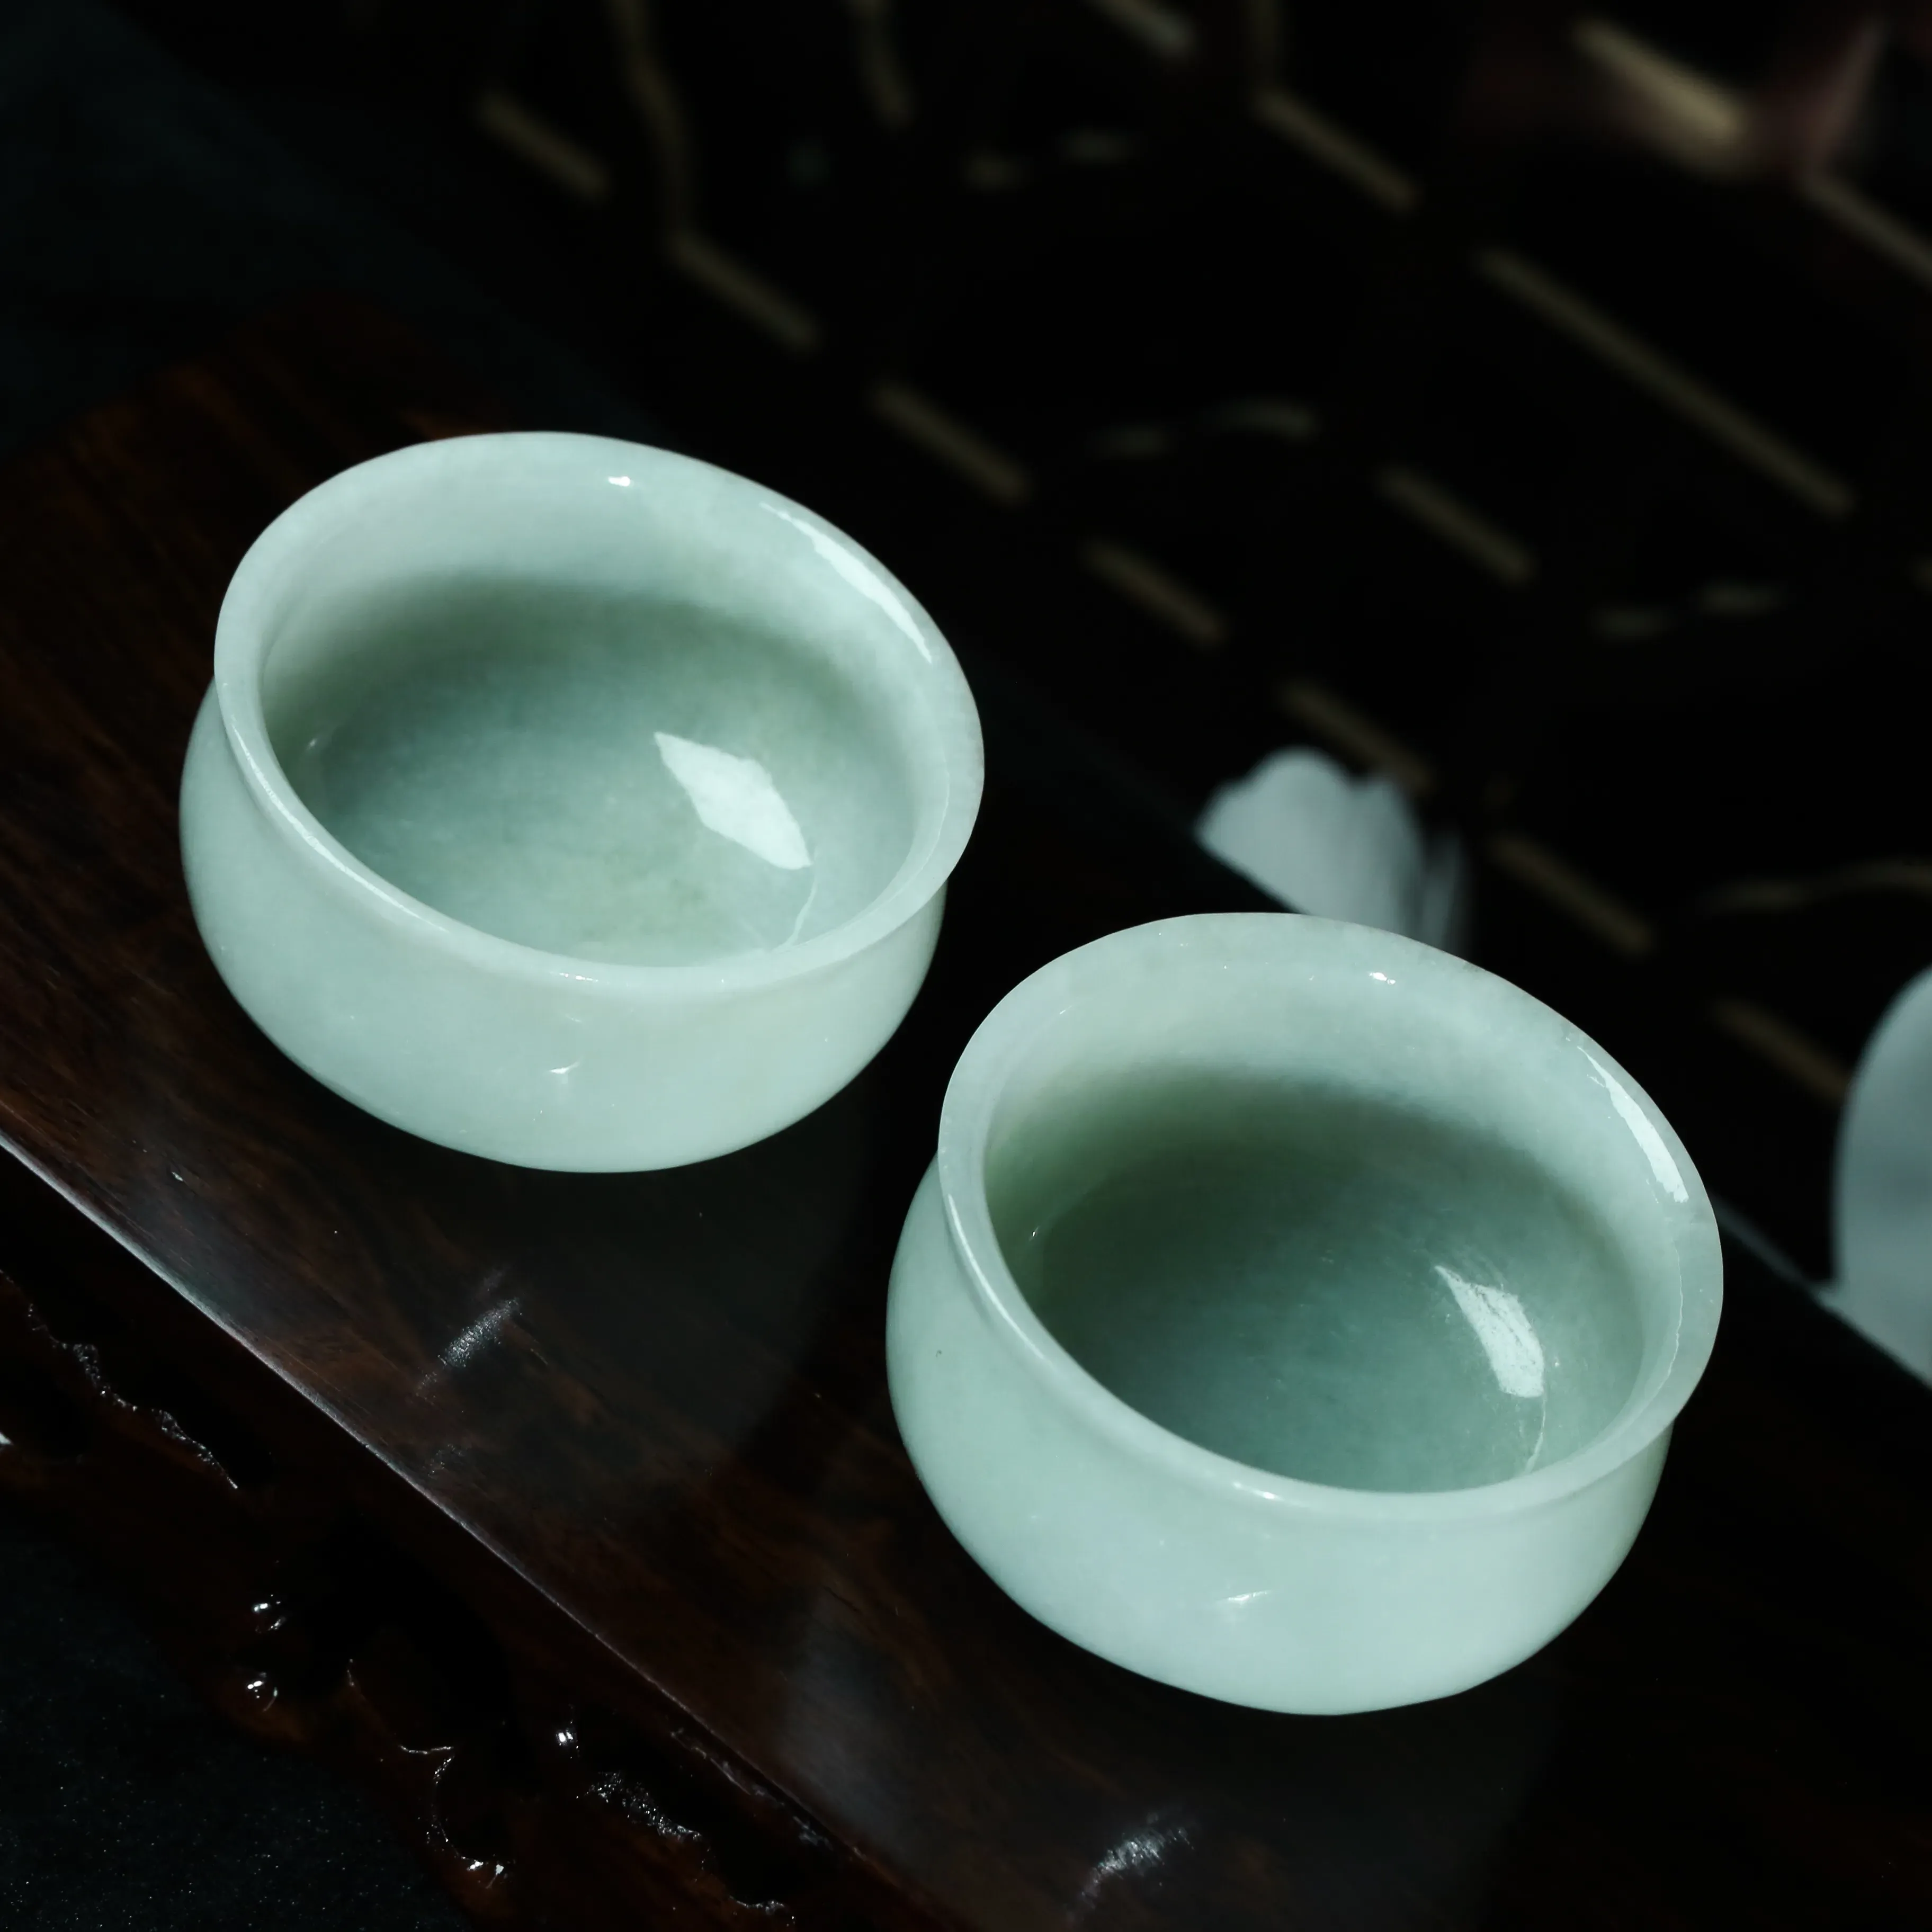 推荐翡翠茶杯一对。玉质莹润，色泽淡雅，雕刻线条流畅。取其一整体尺寸：53.8*29mm。